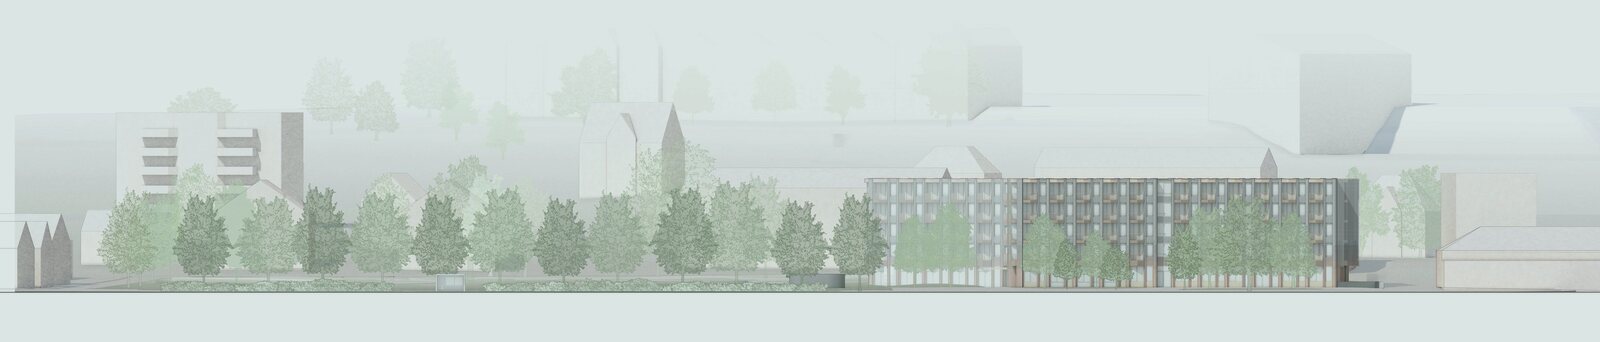 Neuhausen - Neubau Alterszentrum und Parkanlage - Schmid Schaerer Architekten Zürich